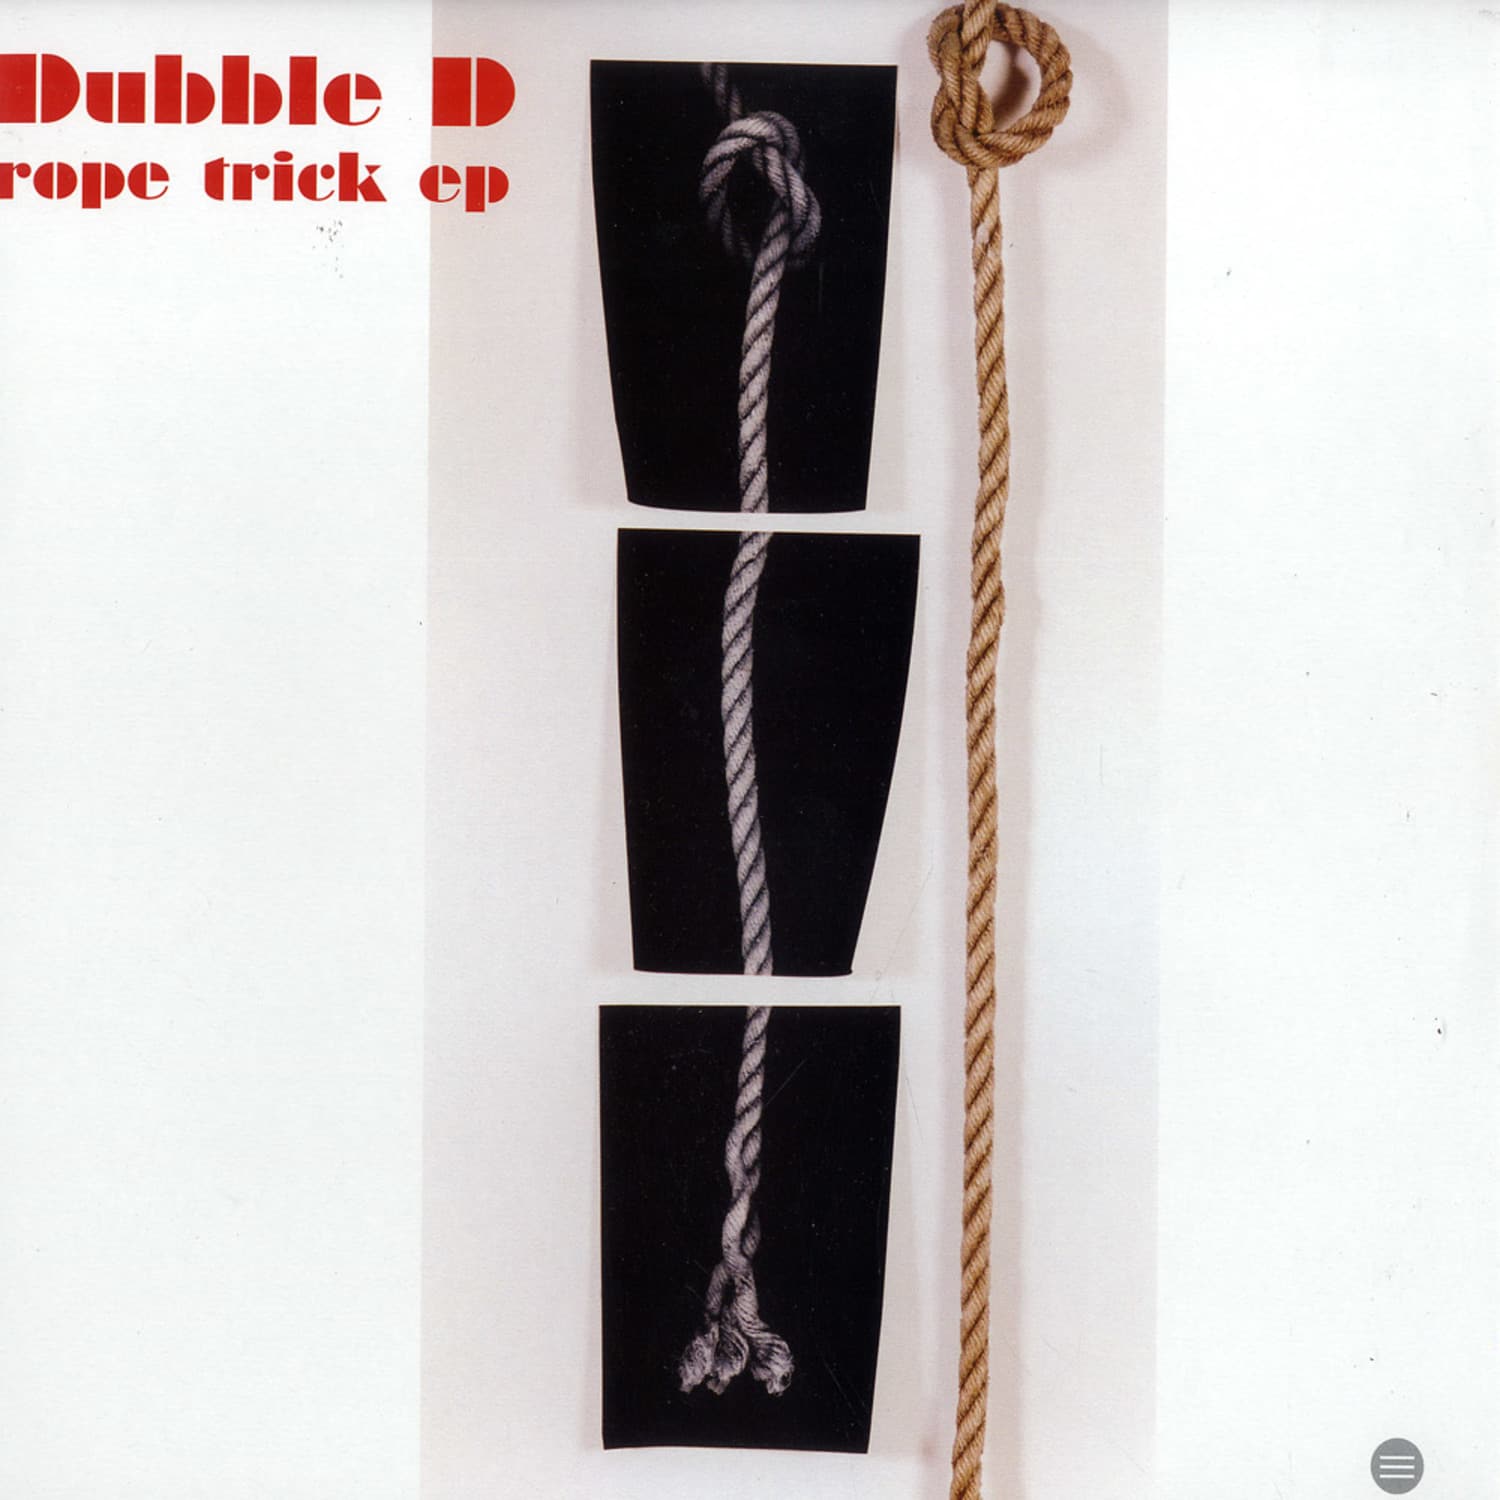 Dubble D - ROPE TRICK EP